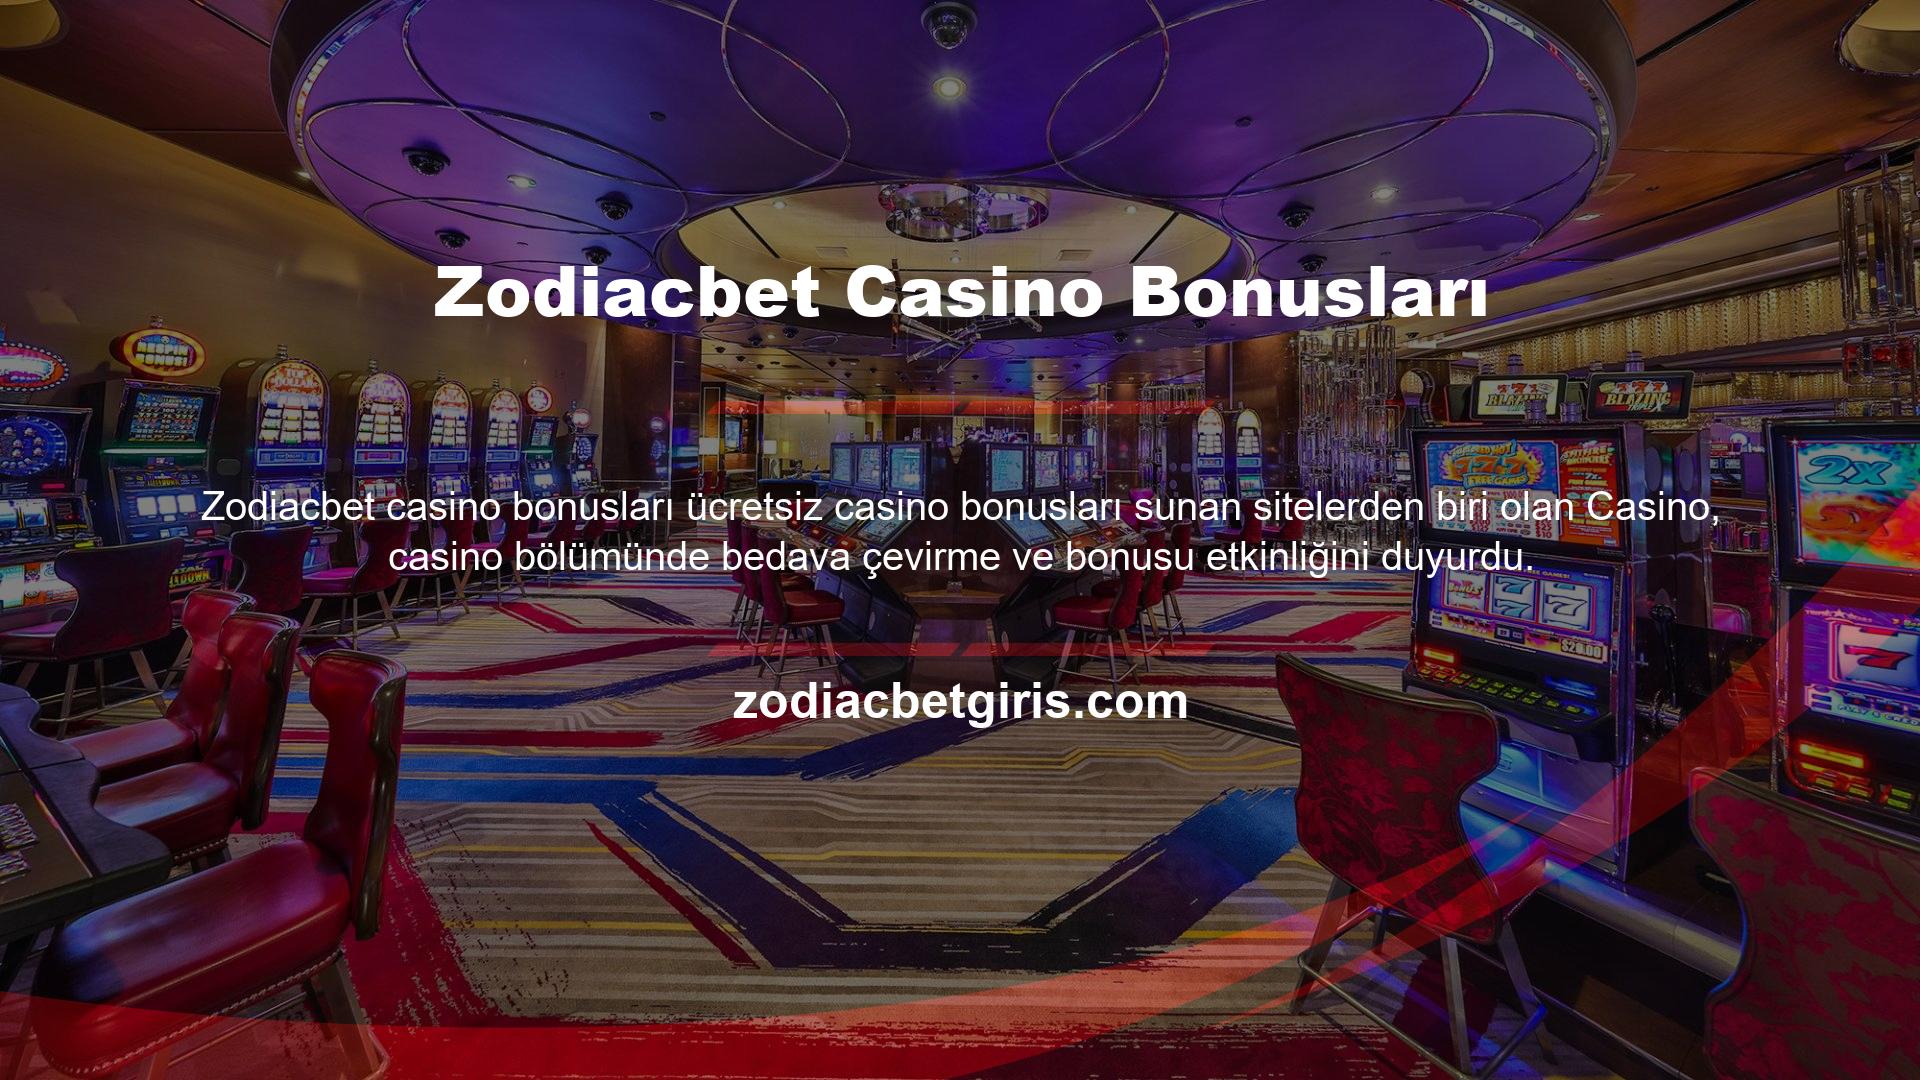 Zodiacbet Online Casino bölümündeki promosyonlarınızı, özellikle Zodiacbet bonusu olmak üzere slot oyunları için de kullanabilirsiniz